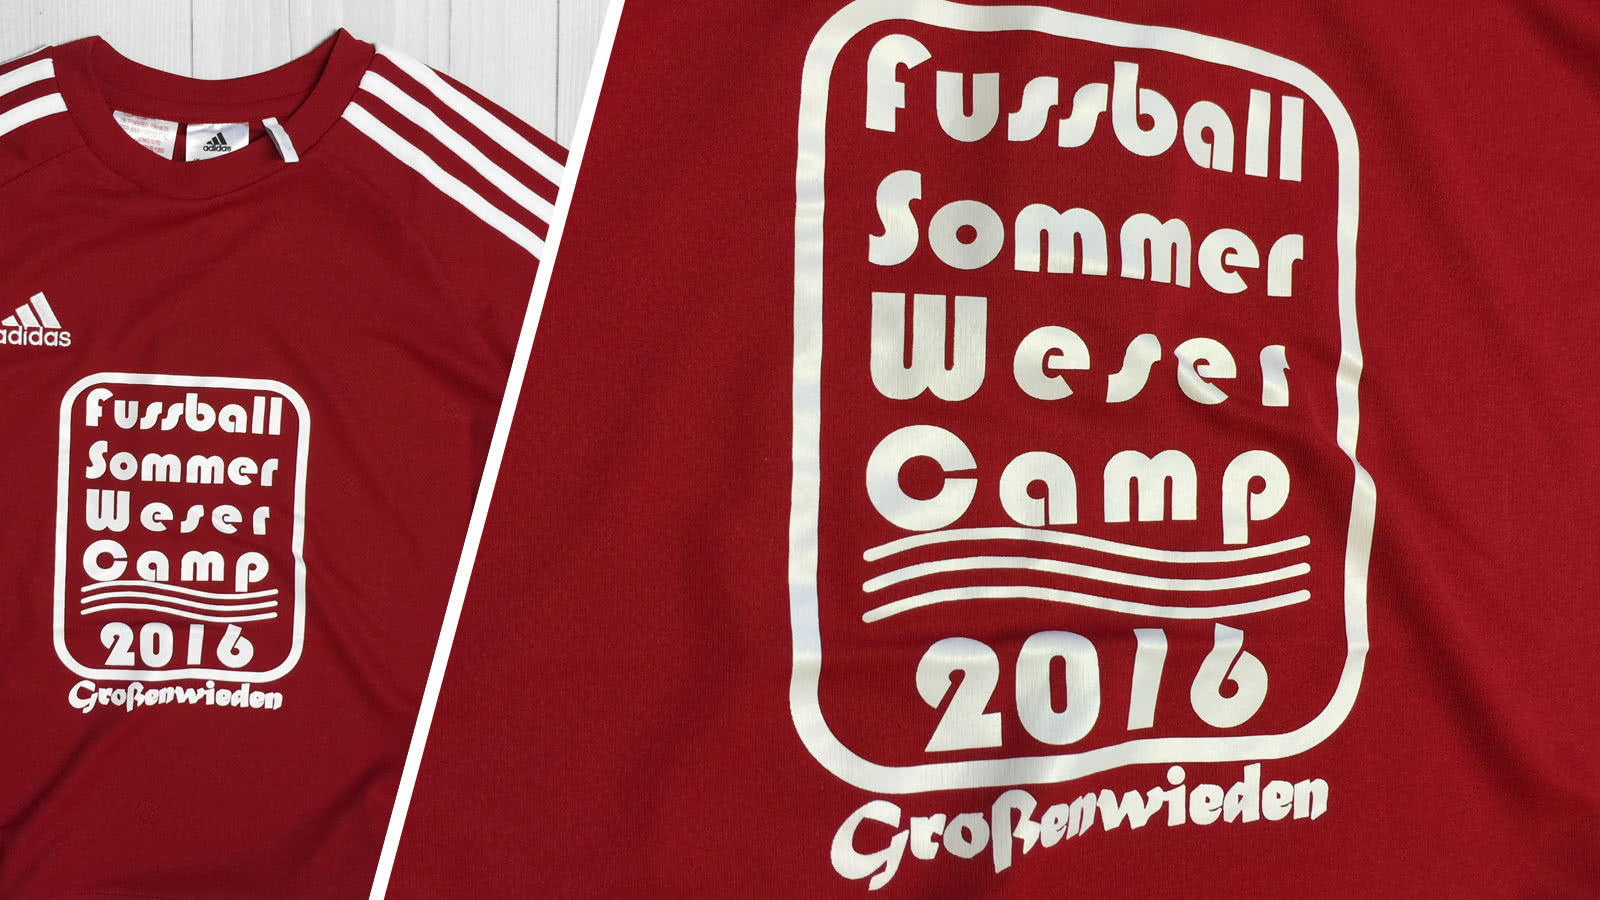 Die Trikots mit aufdruck Fußball Sommer Weser Camp